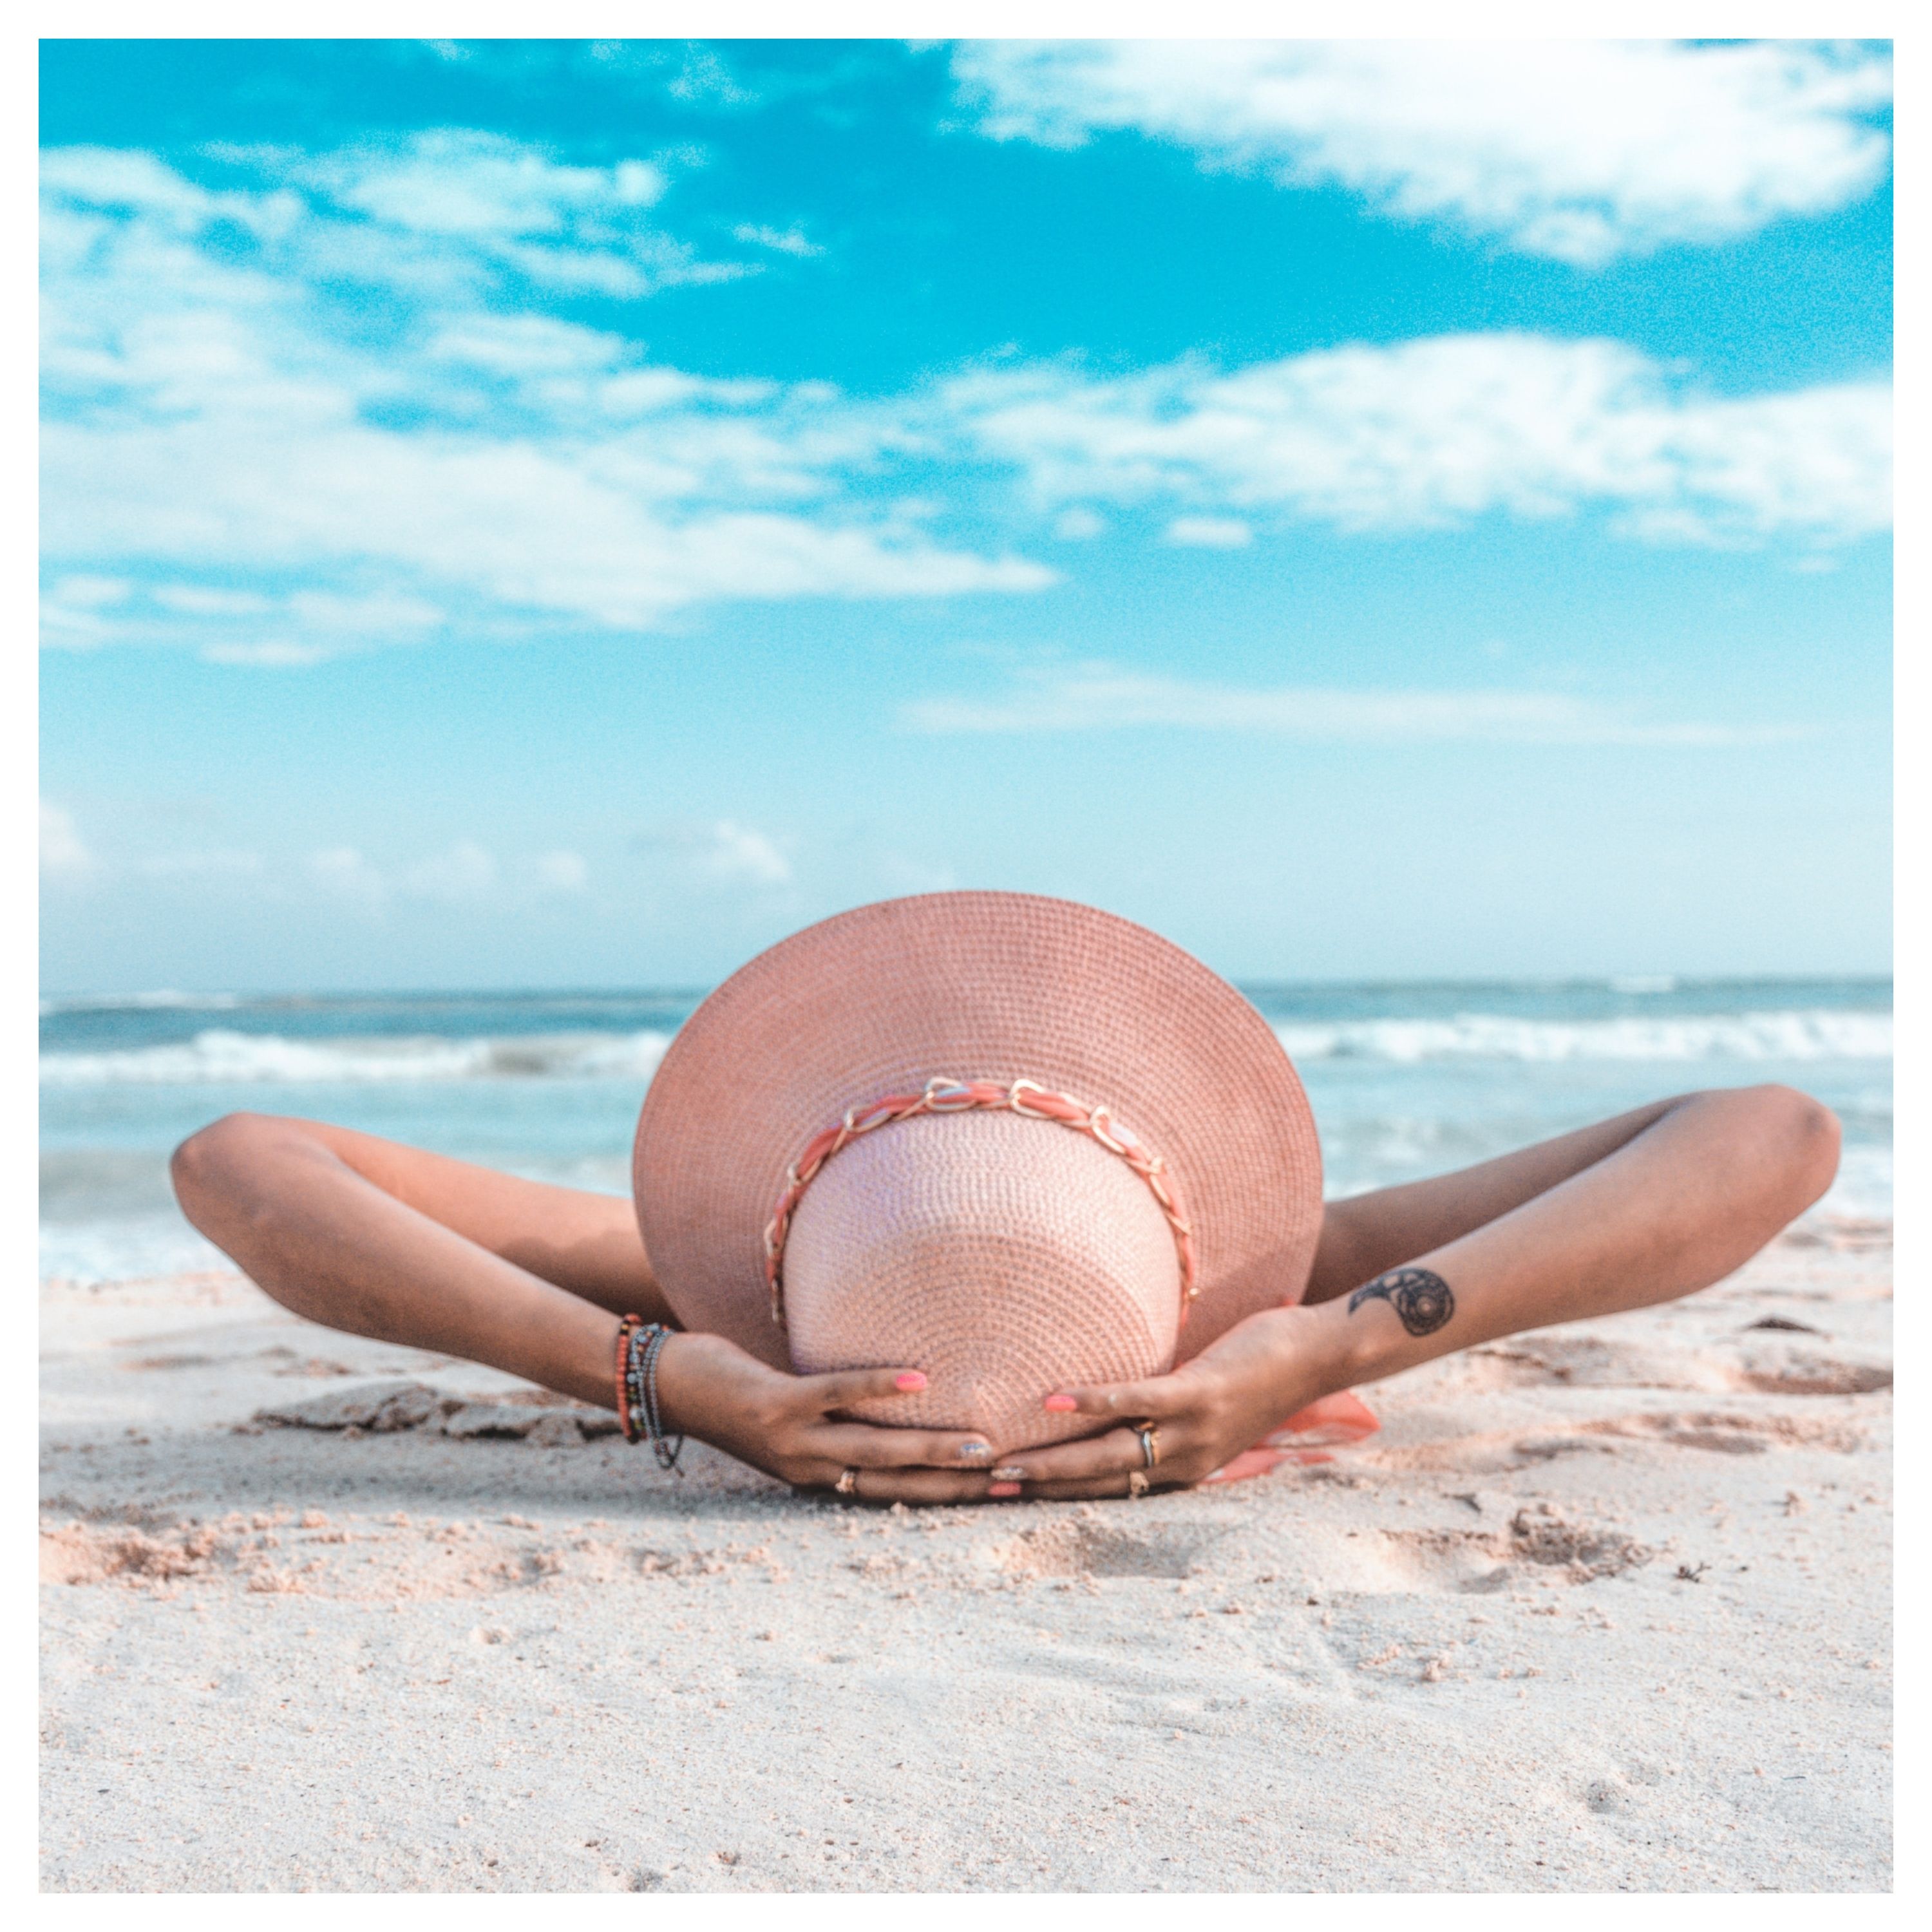 Une personne allongée sur du sable face à la mer porte un chapeau et soutient sa tête